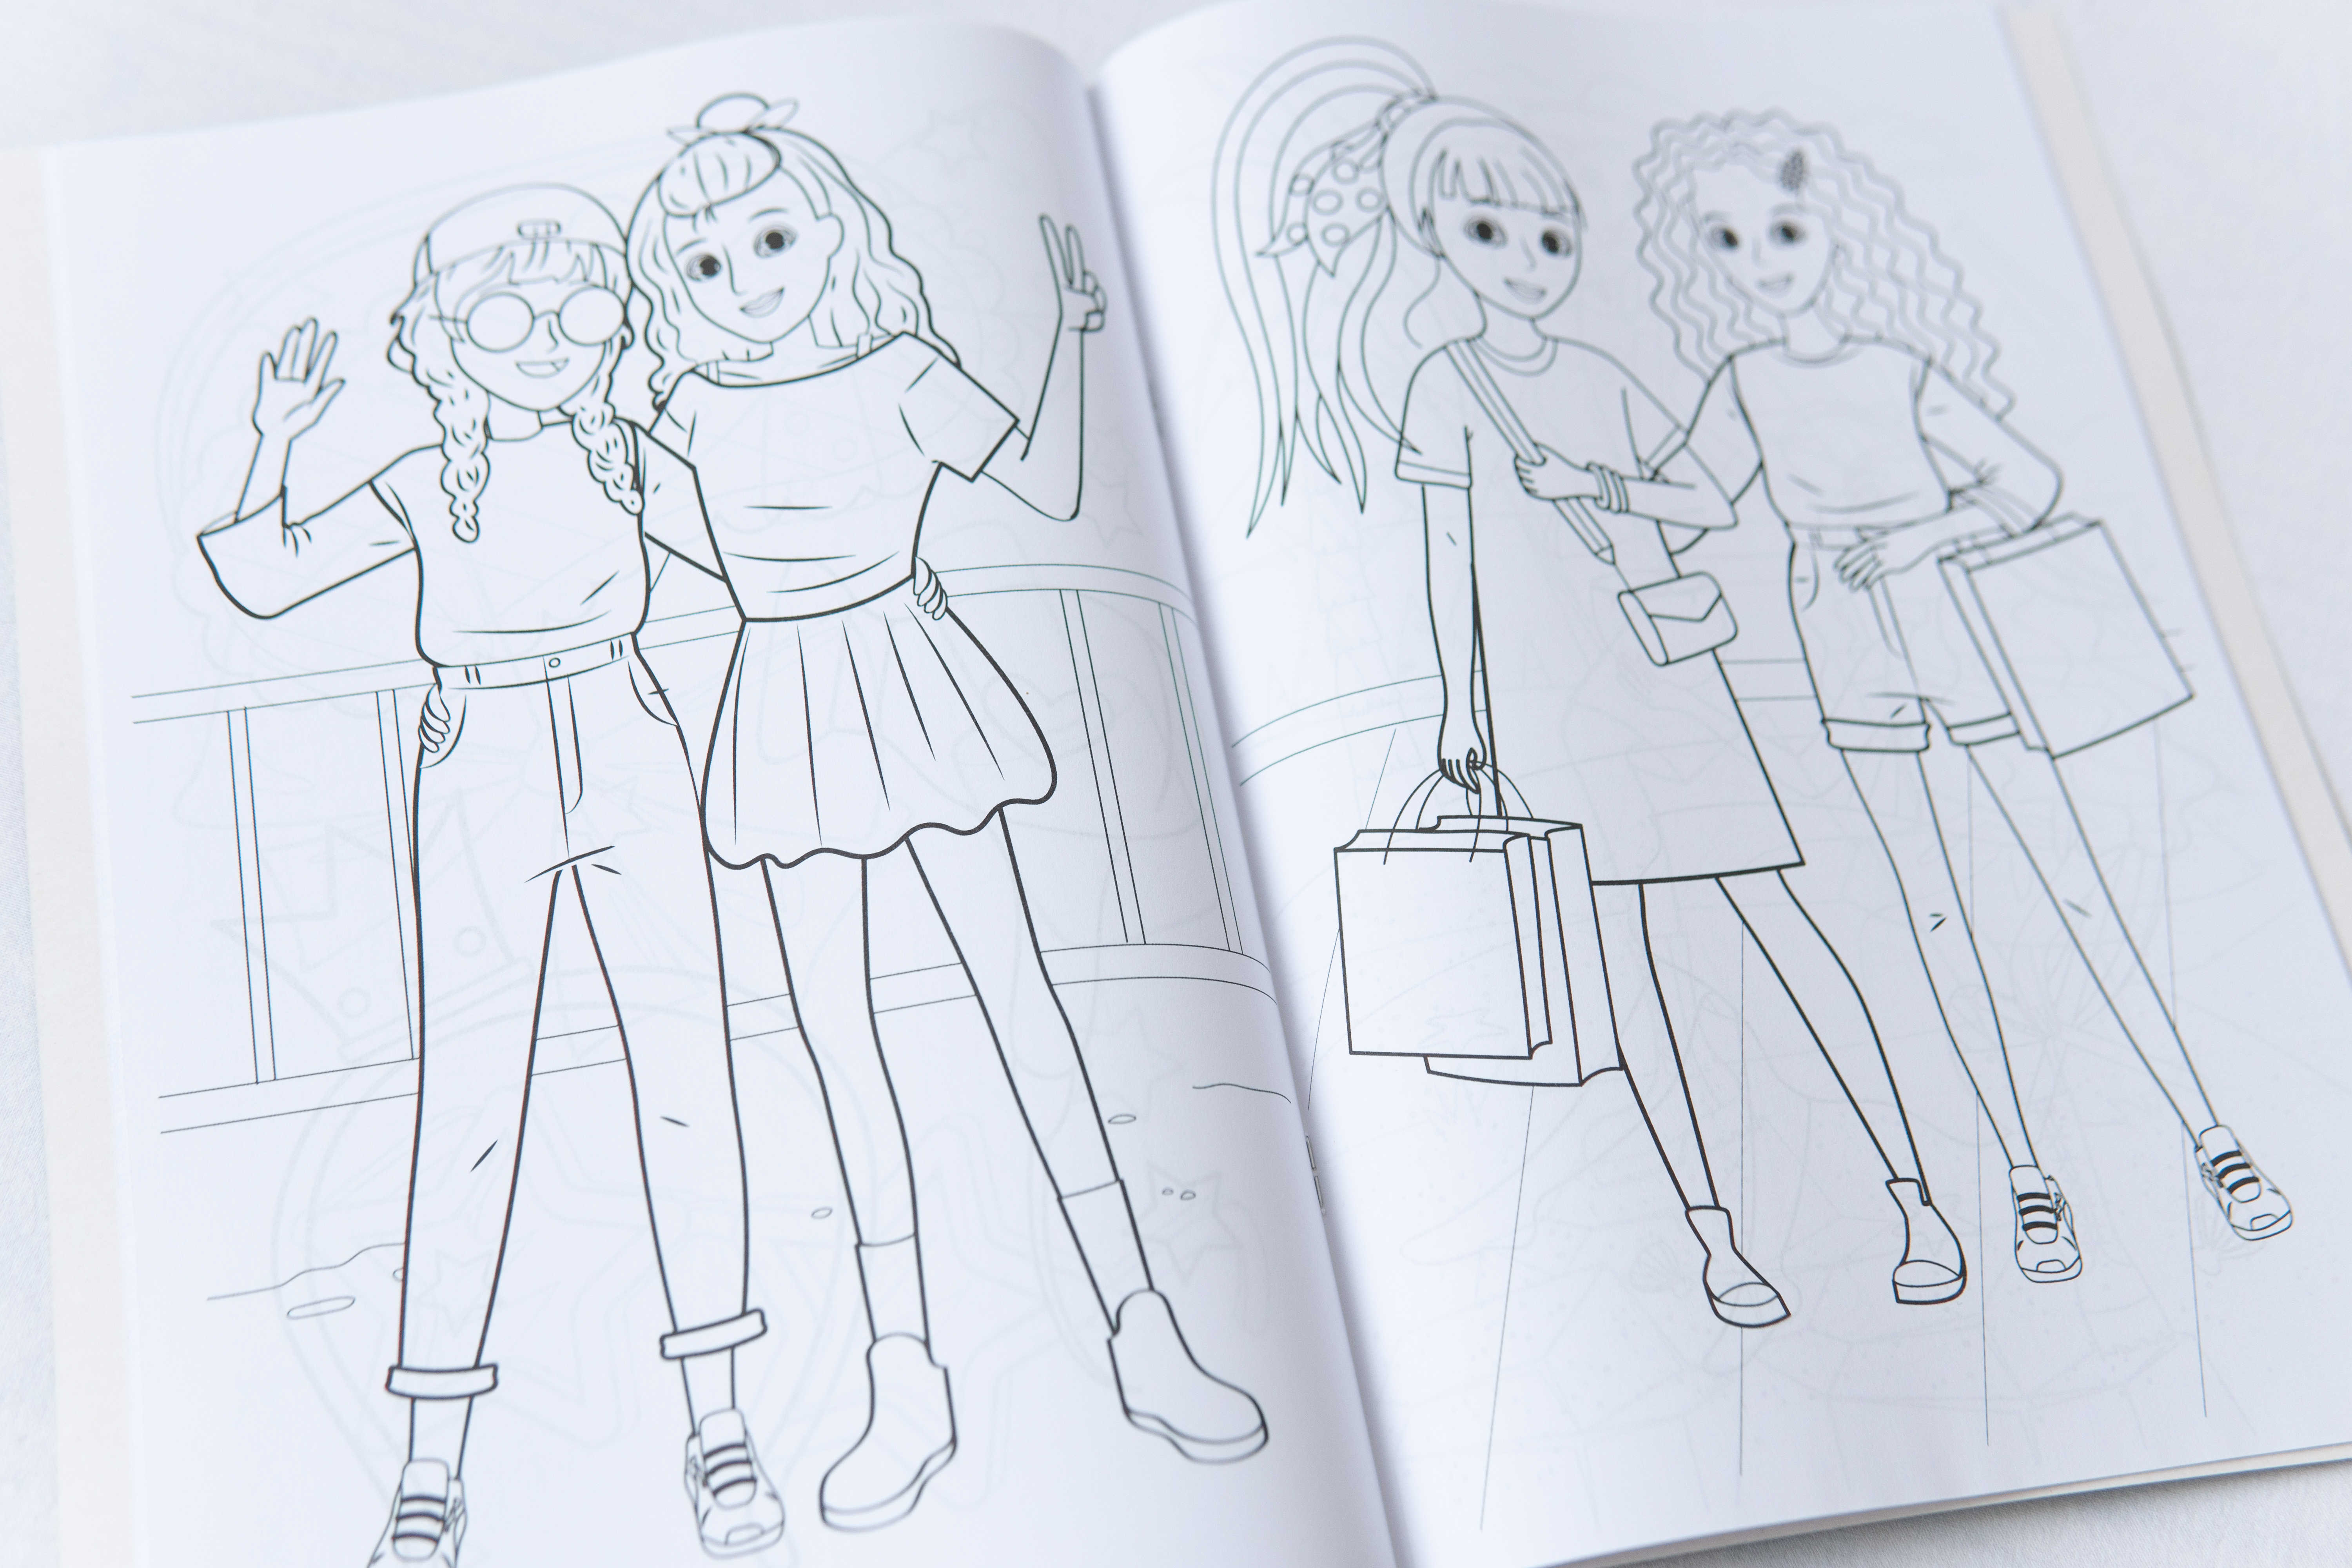 Malbuch für Kinder Super-Malbuch - Coole Mädchen/Malbuch für Kinder Super-Malbuch - Coole Mädchen